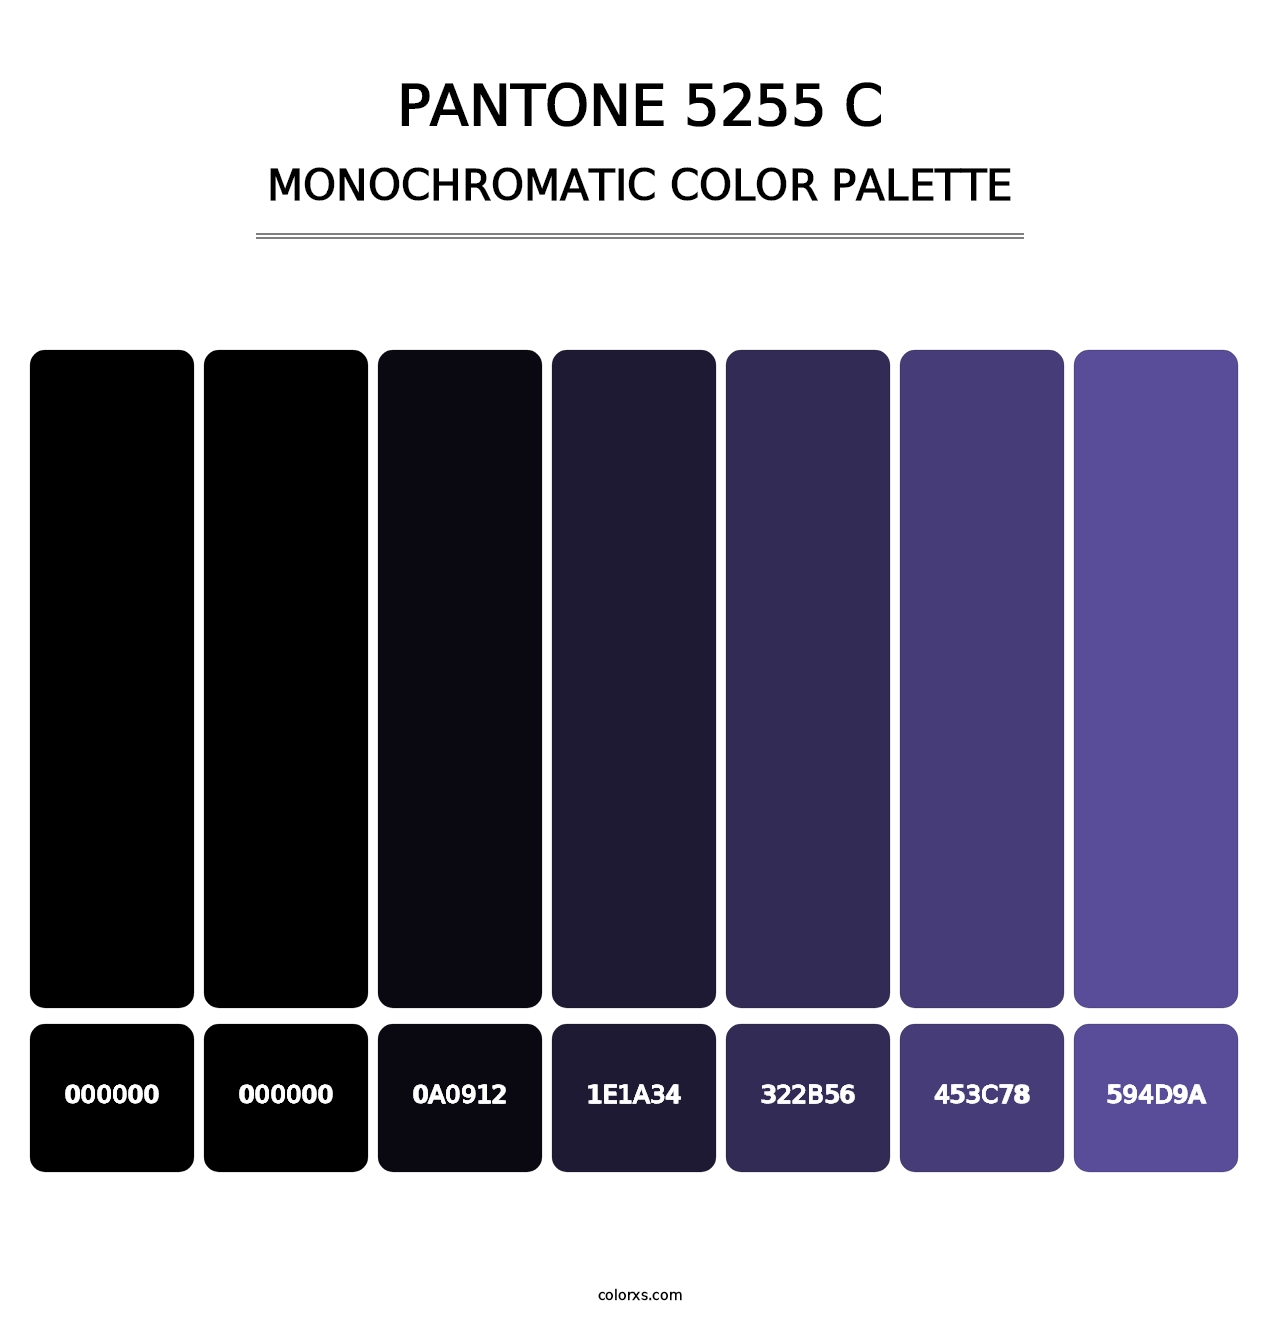 PANTONE 5255 C - Monochromatic Color Palette